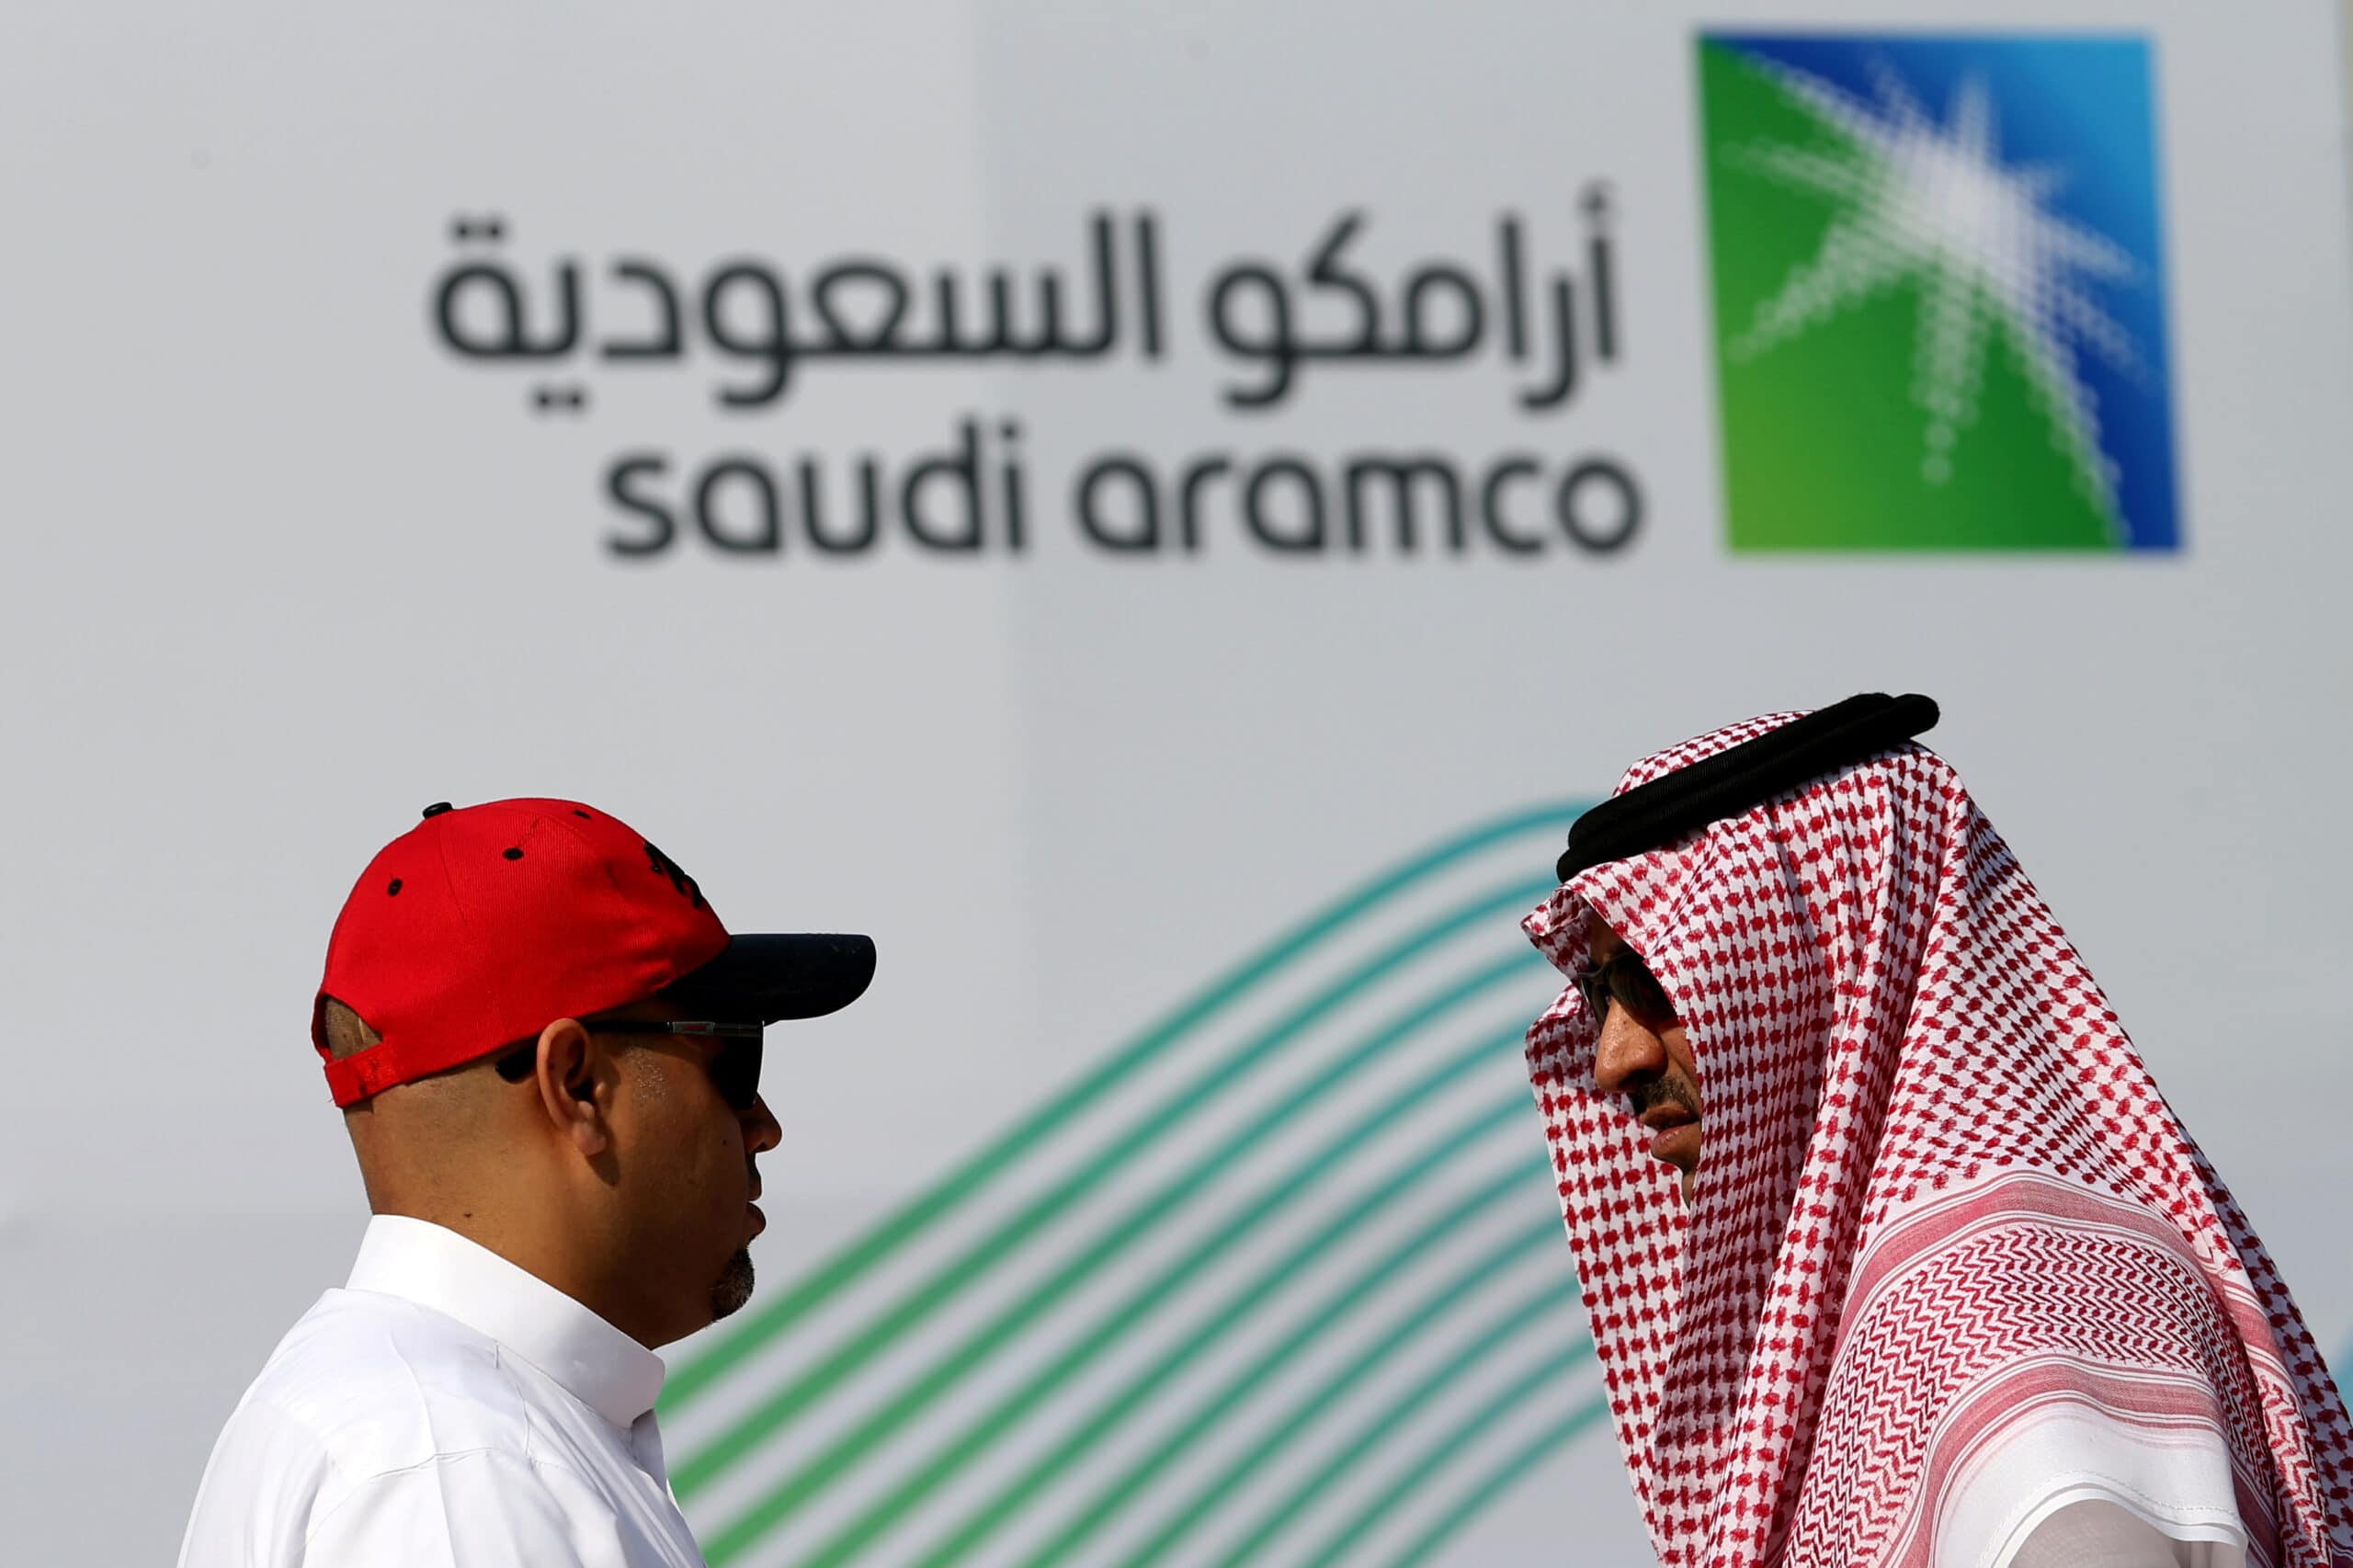 أرامكو السعودية تتلقى طلبات سندات بقيمة 16 مليار دولار